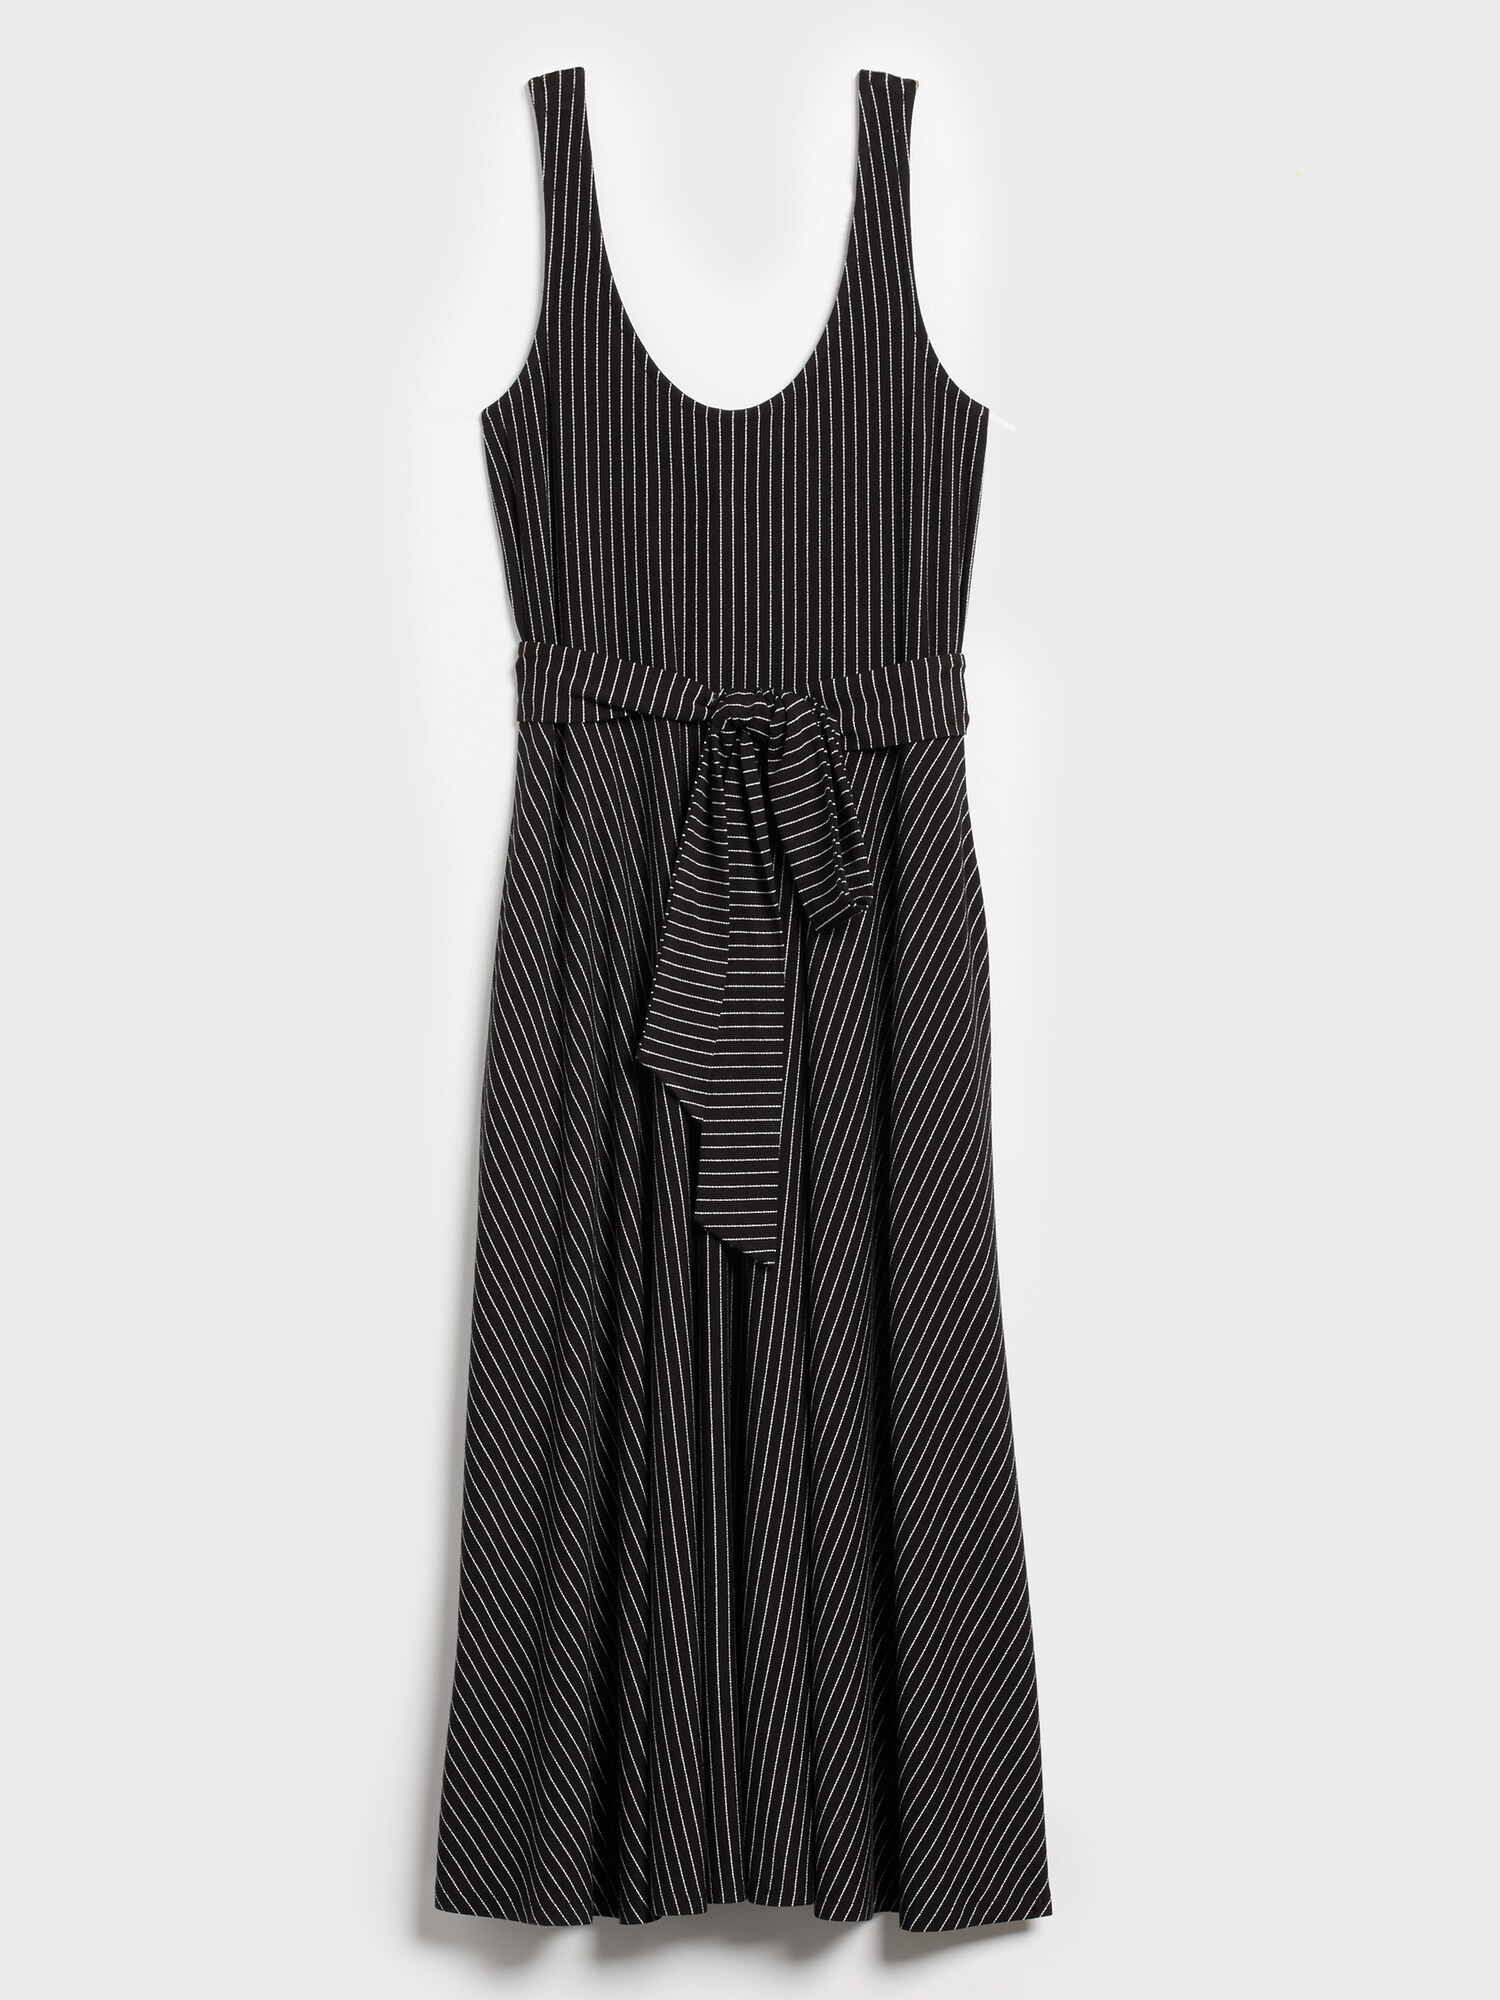 Knit Striped Midi Dress